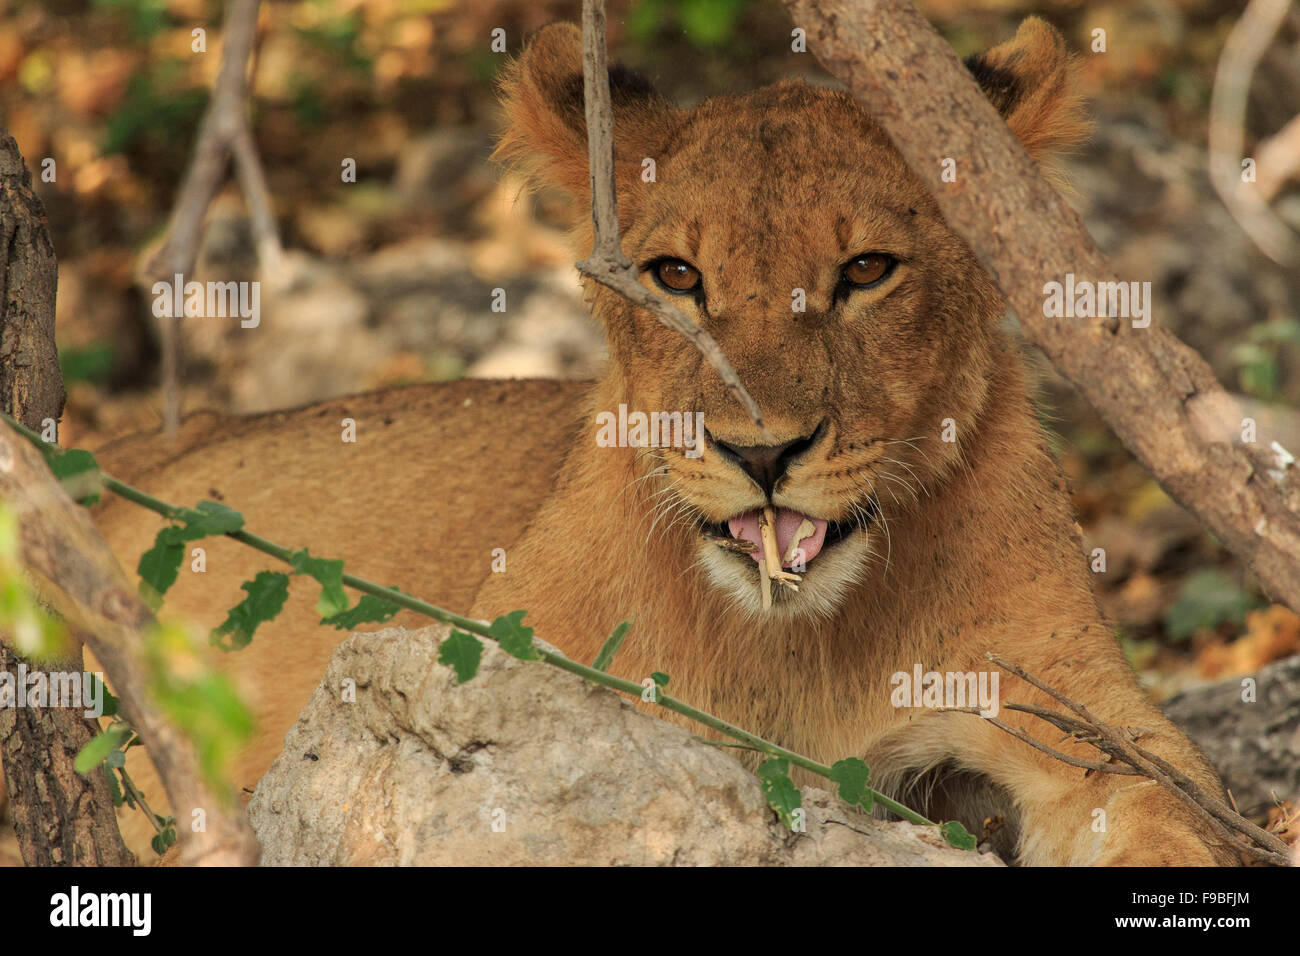 Carino LION CUB giocando con la memory stick e essendo adorabile. Zone incolte nel selvaggio Botswana, Africa. Foto Stock